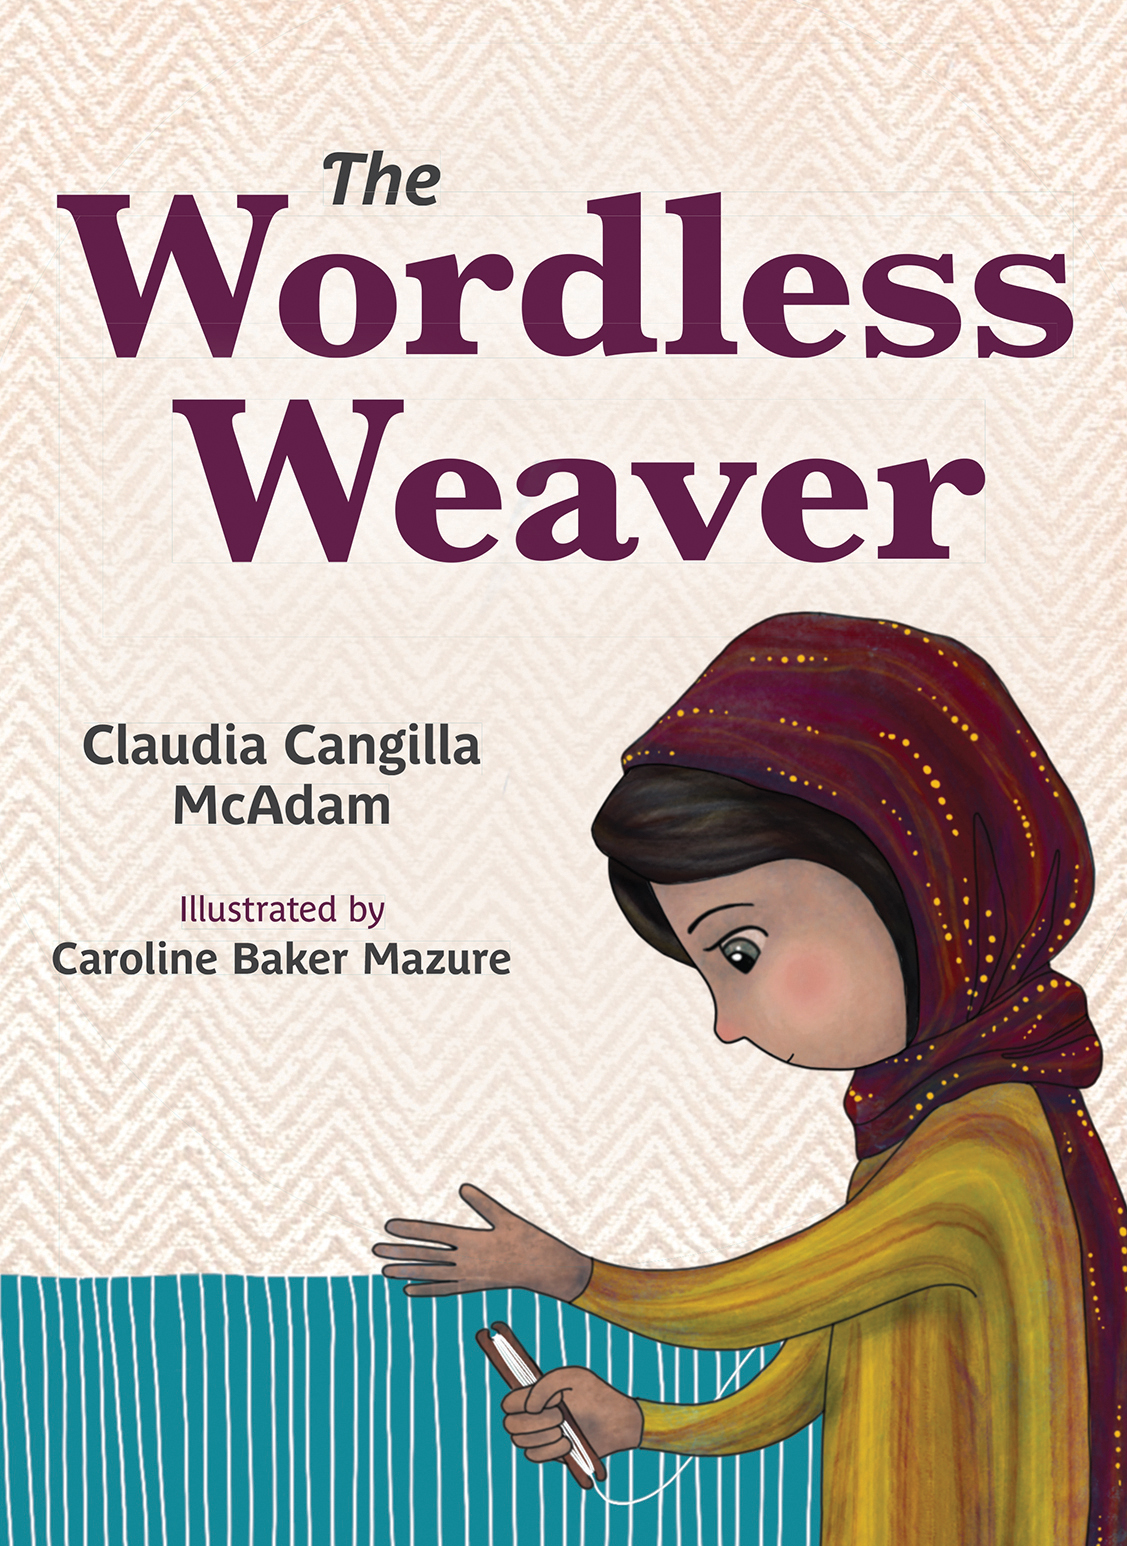 The Wordless Weaver / Claudia Cangilla McAdam